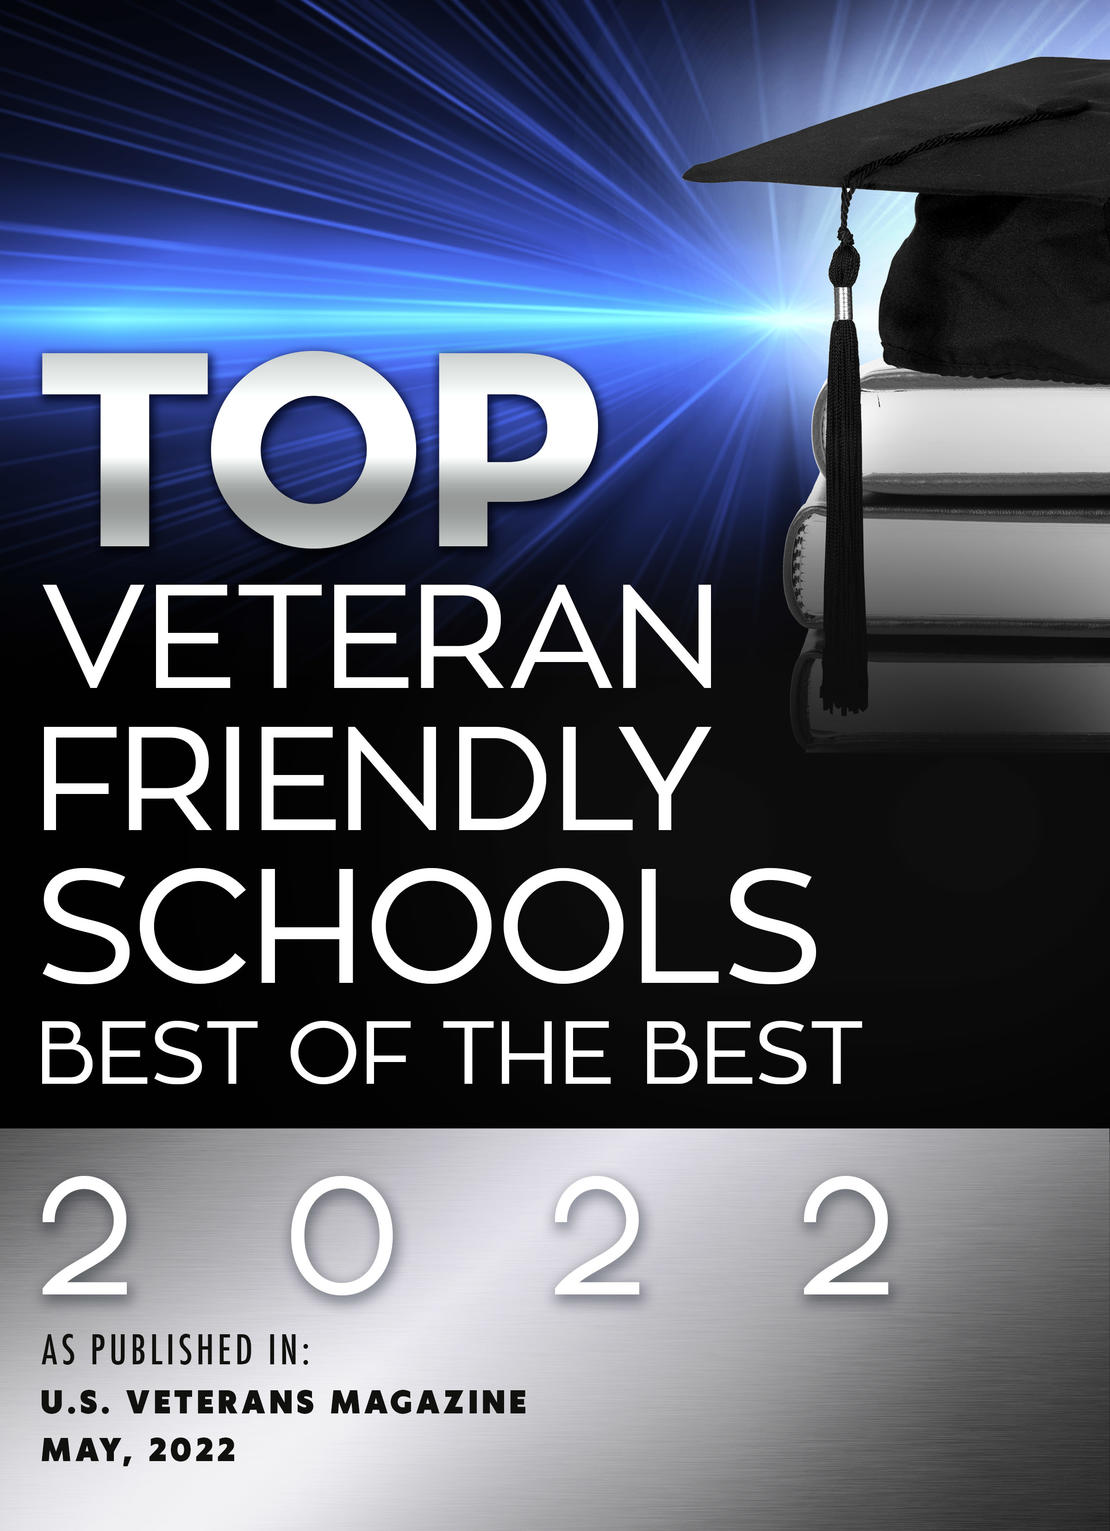 Top Veteran Friendly Schools Best of the Best 2022